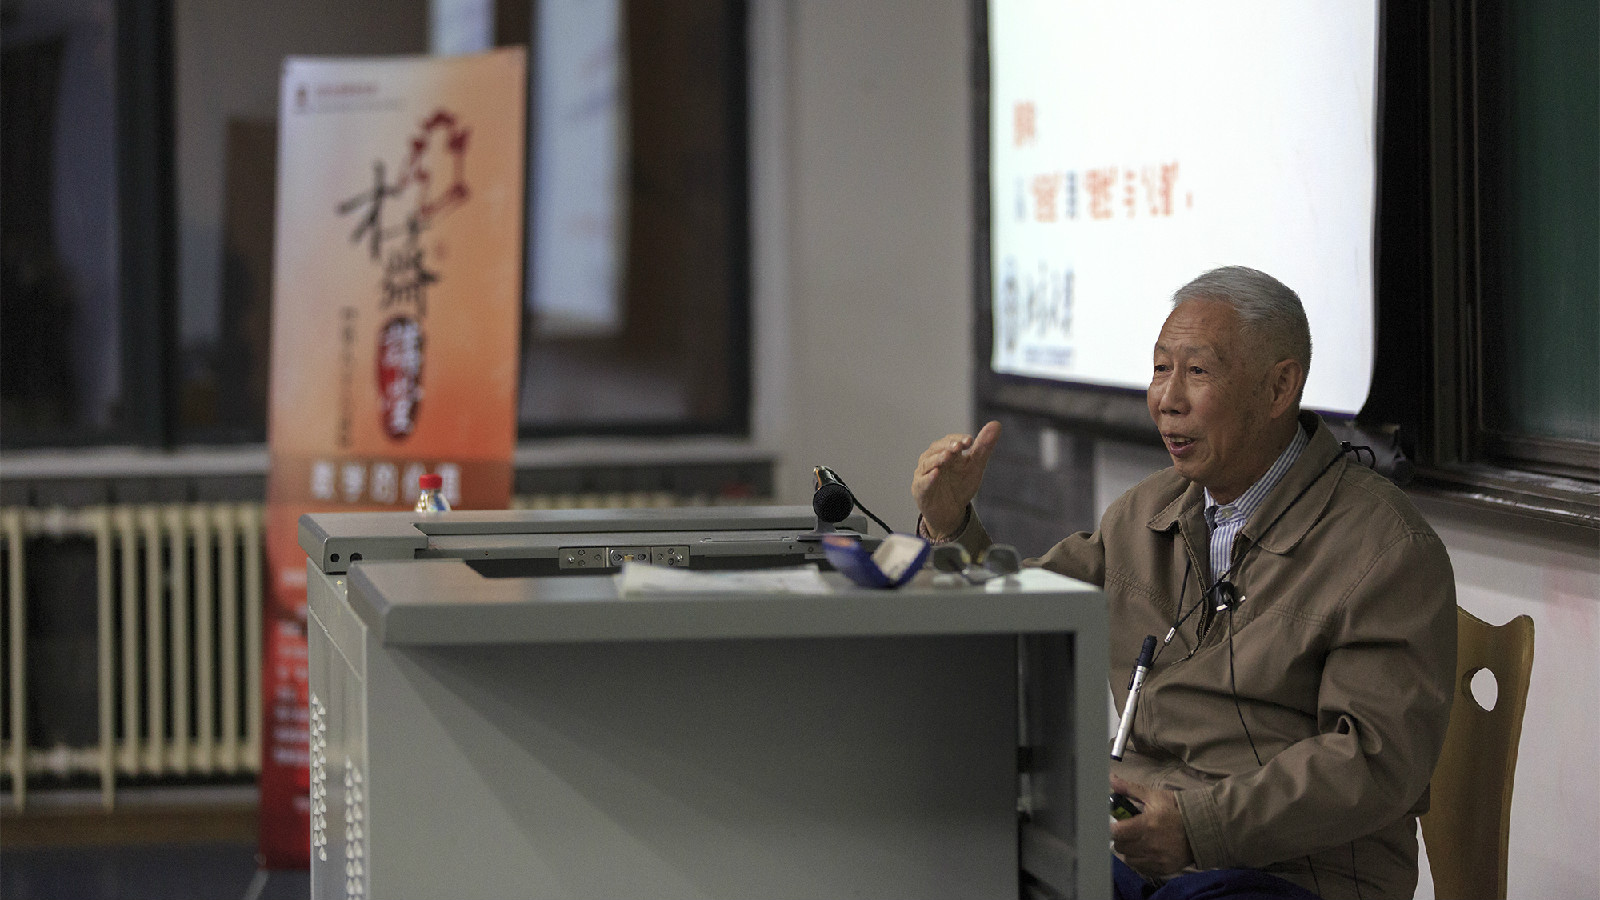 張恭慶院士在北京大學舉辦講座